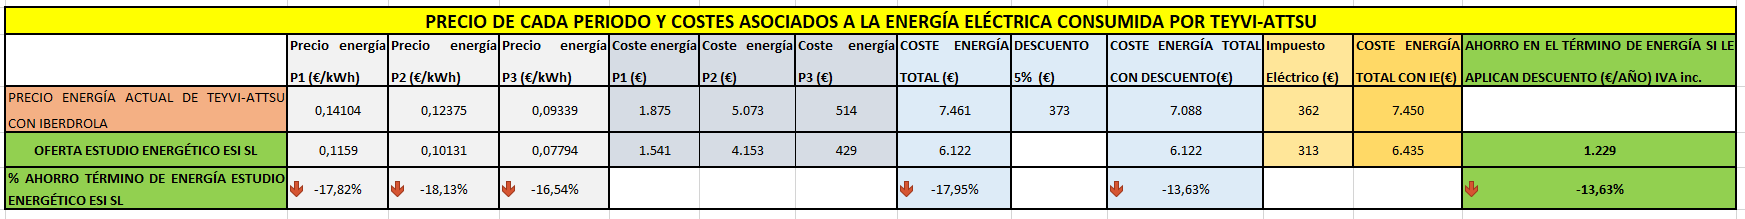 Precio de cada periodo y costes asociados a la energía eléctrica de TEYVI-ATTSU